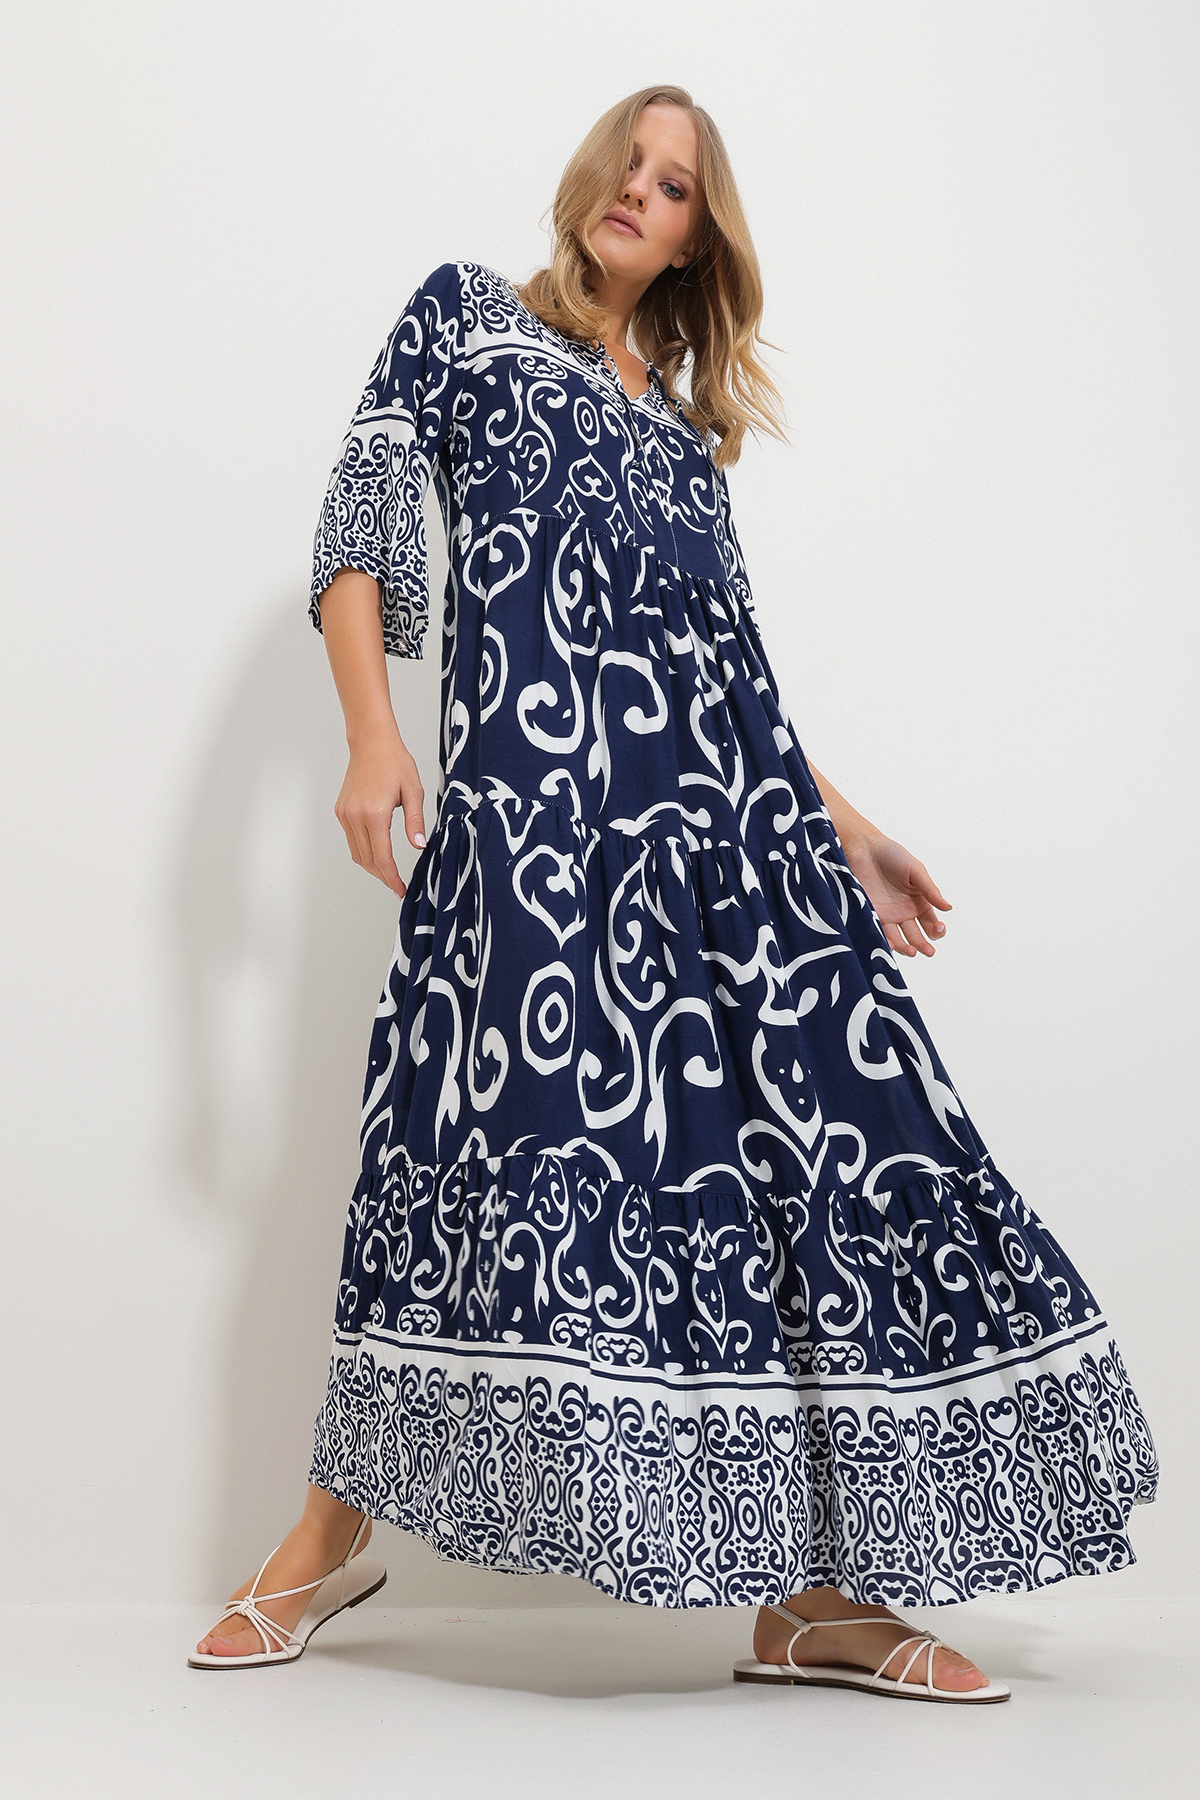 Levně Trend Alaçatı Stili Women's Navy Blue Front Laced Patterned Woven Viscose Dress